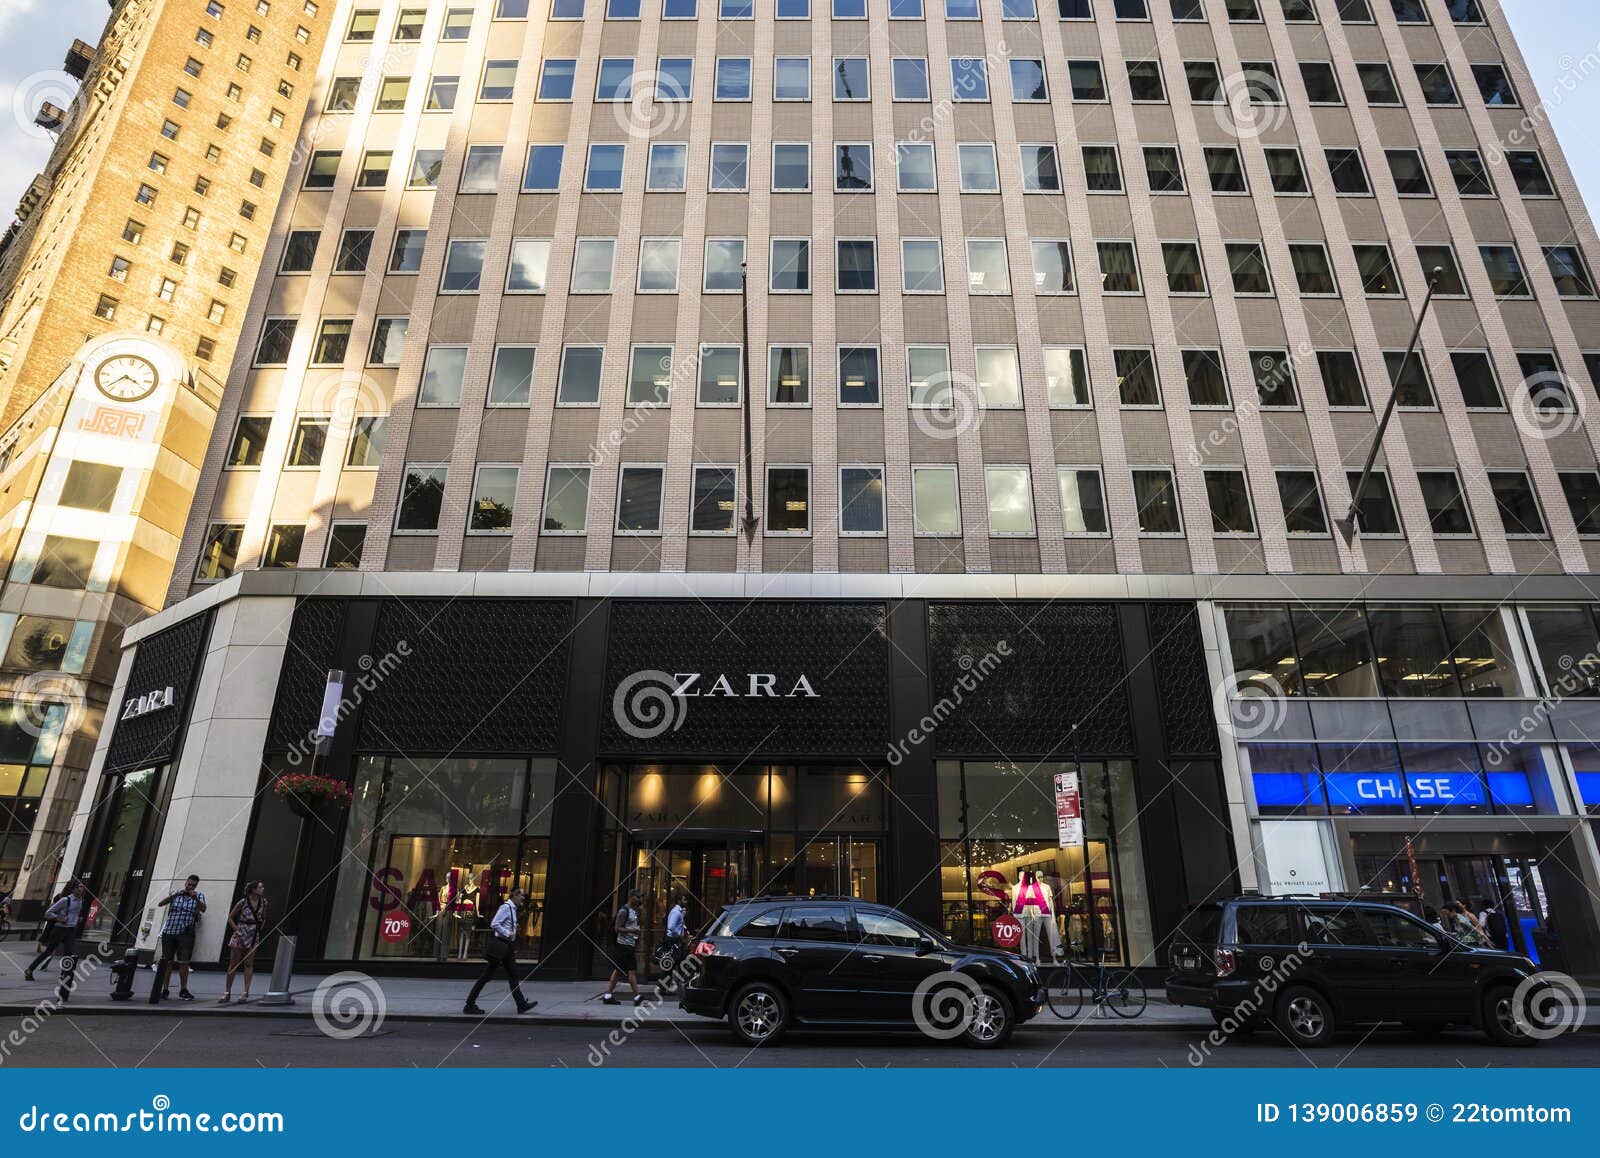 Zara Store In Manhattan, New York City 